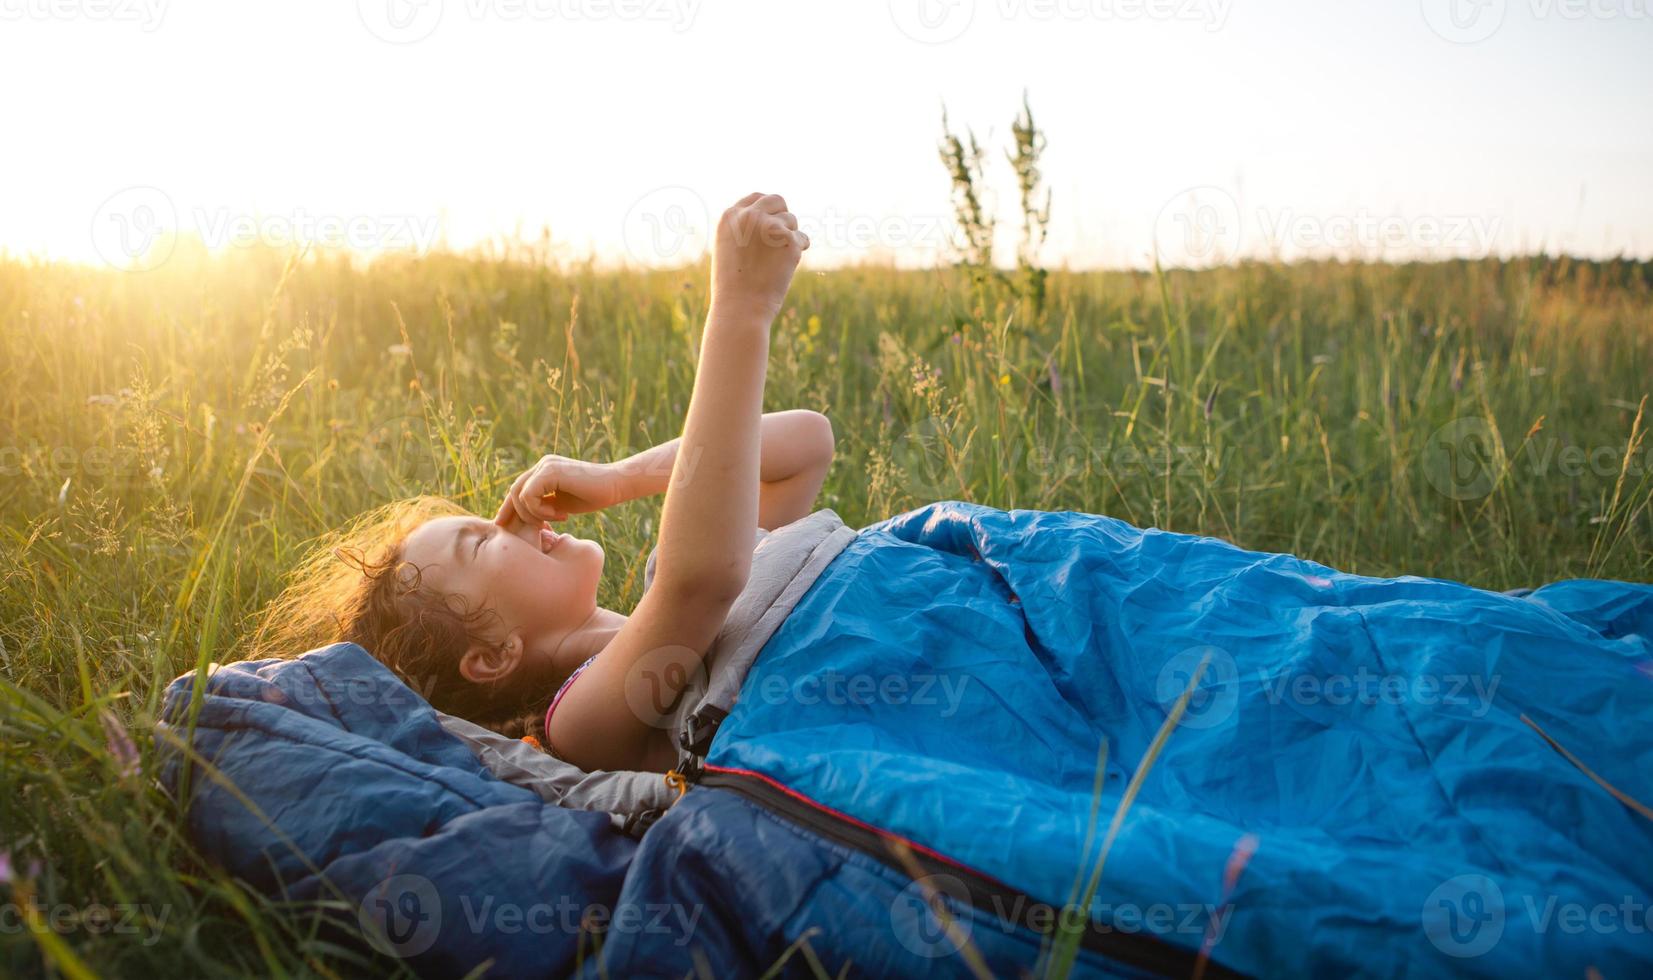 la niña no está satisfecha con las picaduras de mosquitos, el niño duerme en un saco de dormir sobre la hierba en un viaje de campamento. recreación al aire libre ecológica, horario de verano. alteración del sueño, repelente. foto